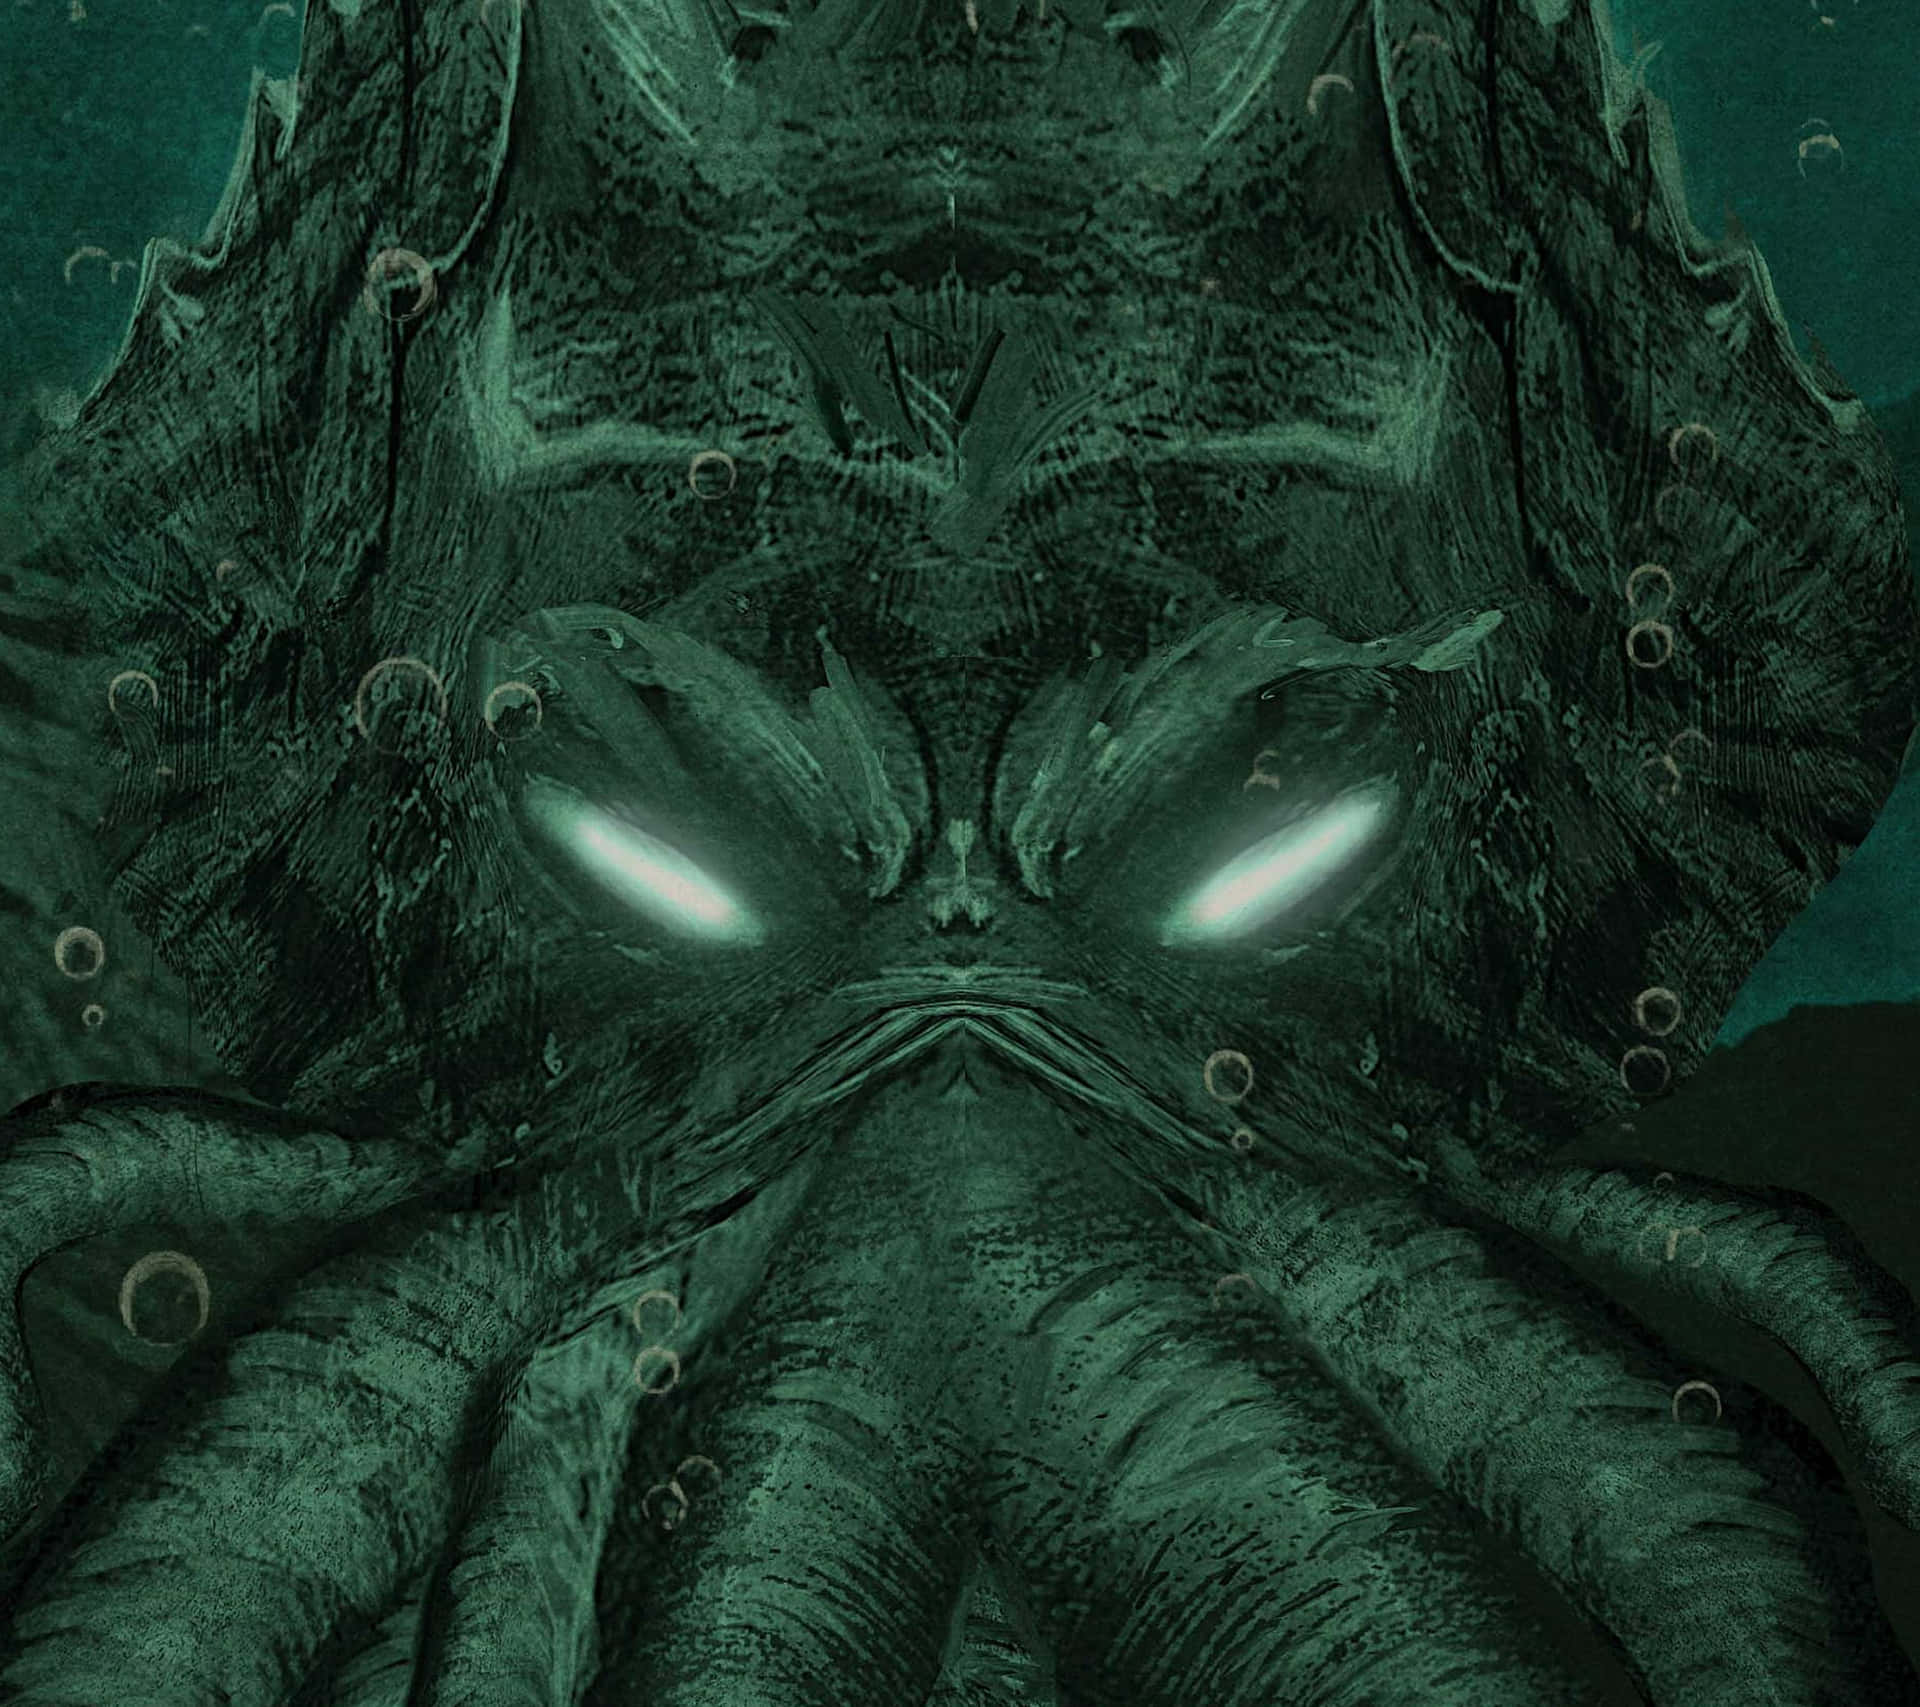 Einbild Inspiriert Von H.p. Lovecrafts Kosmischem Horror